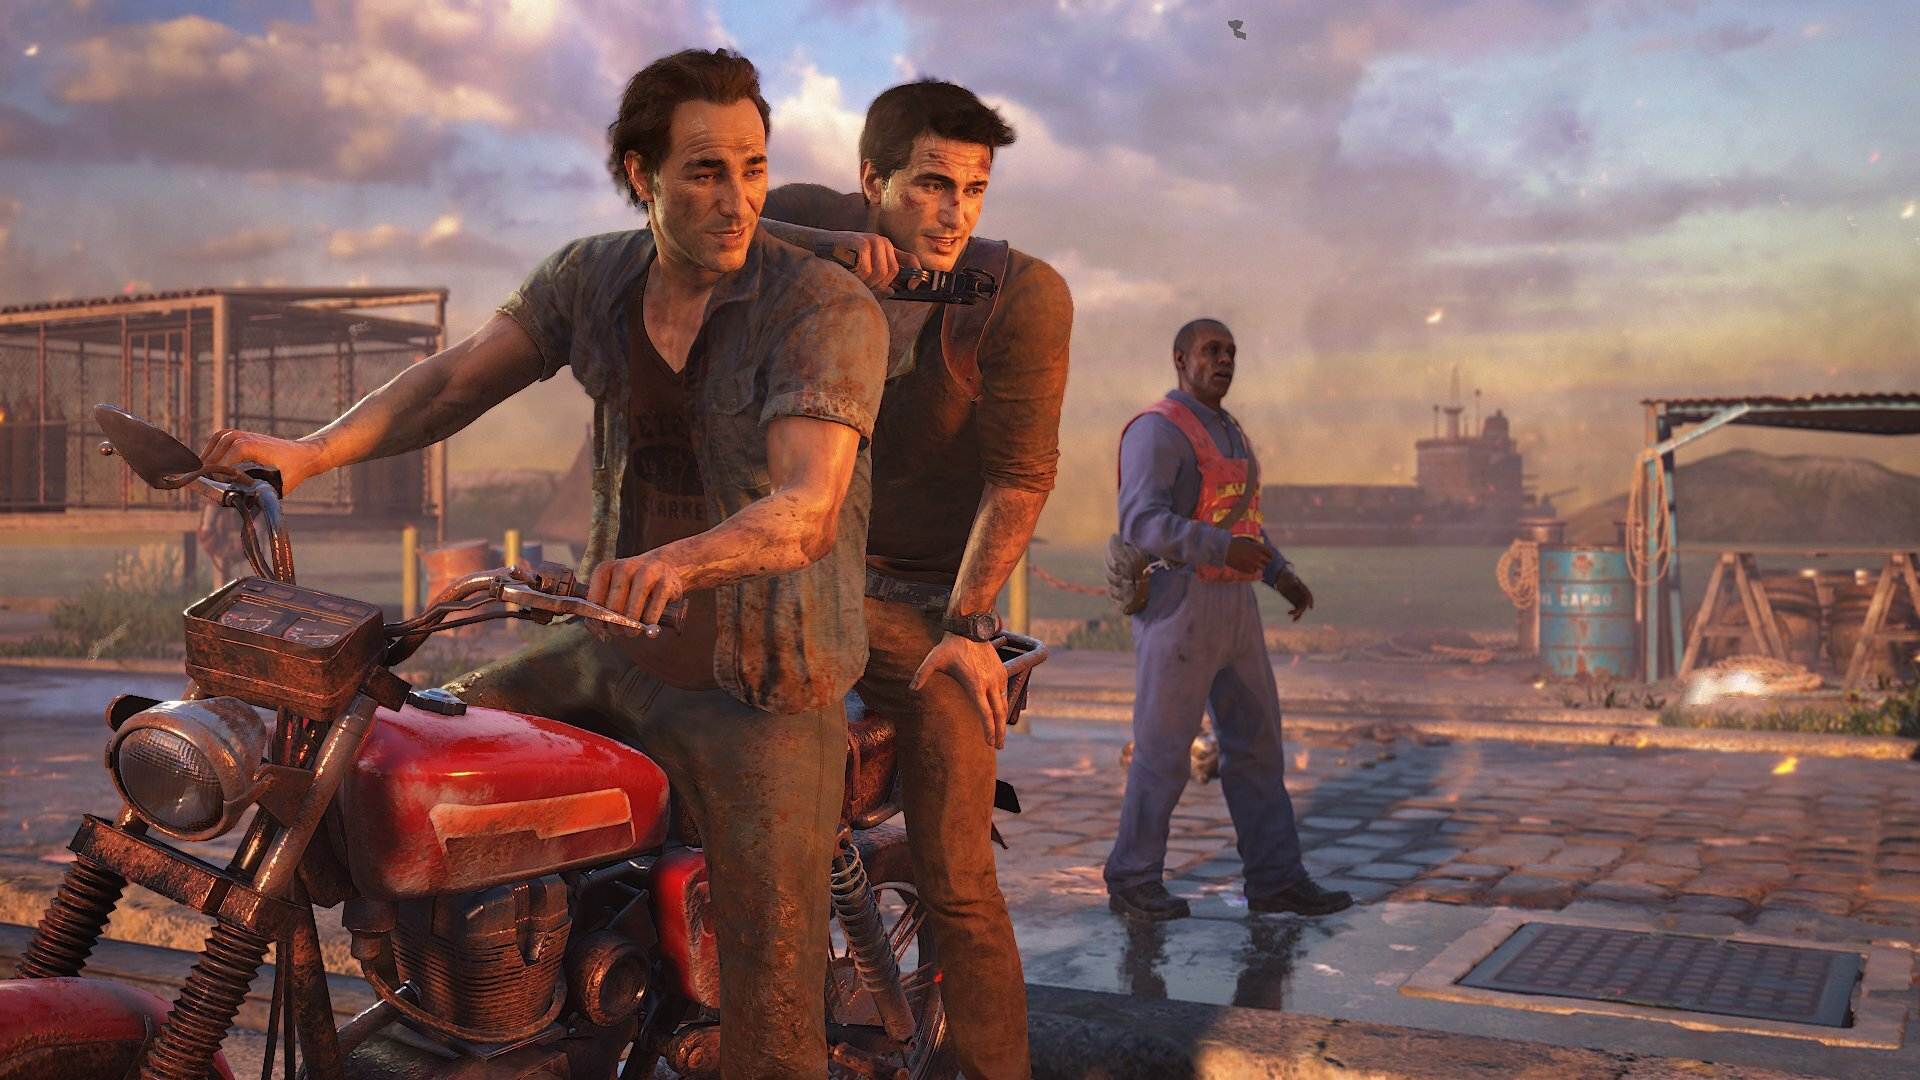 غیررسمی: تاریخ انتشار بازی Uncharted: Legacy of Thieves برای کامپیوتر مشخص شد